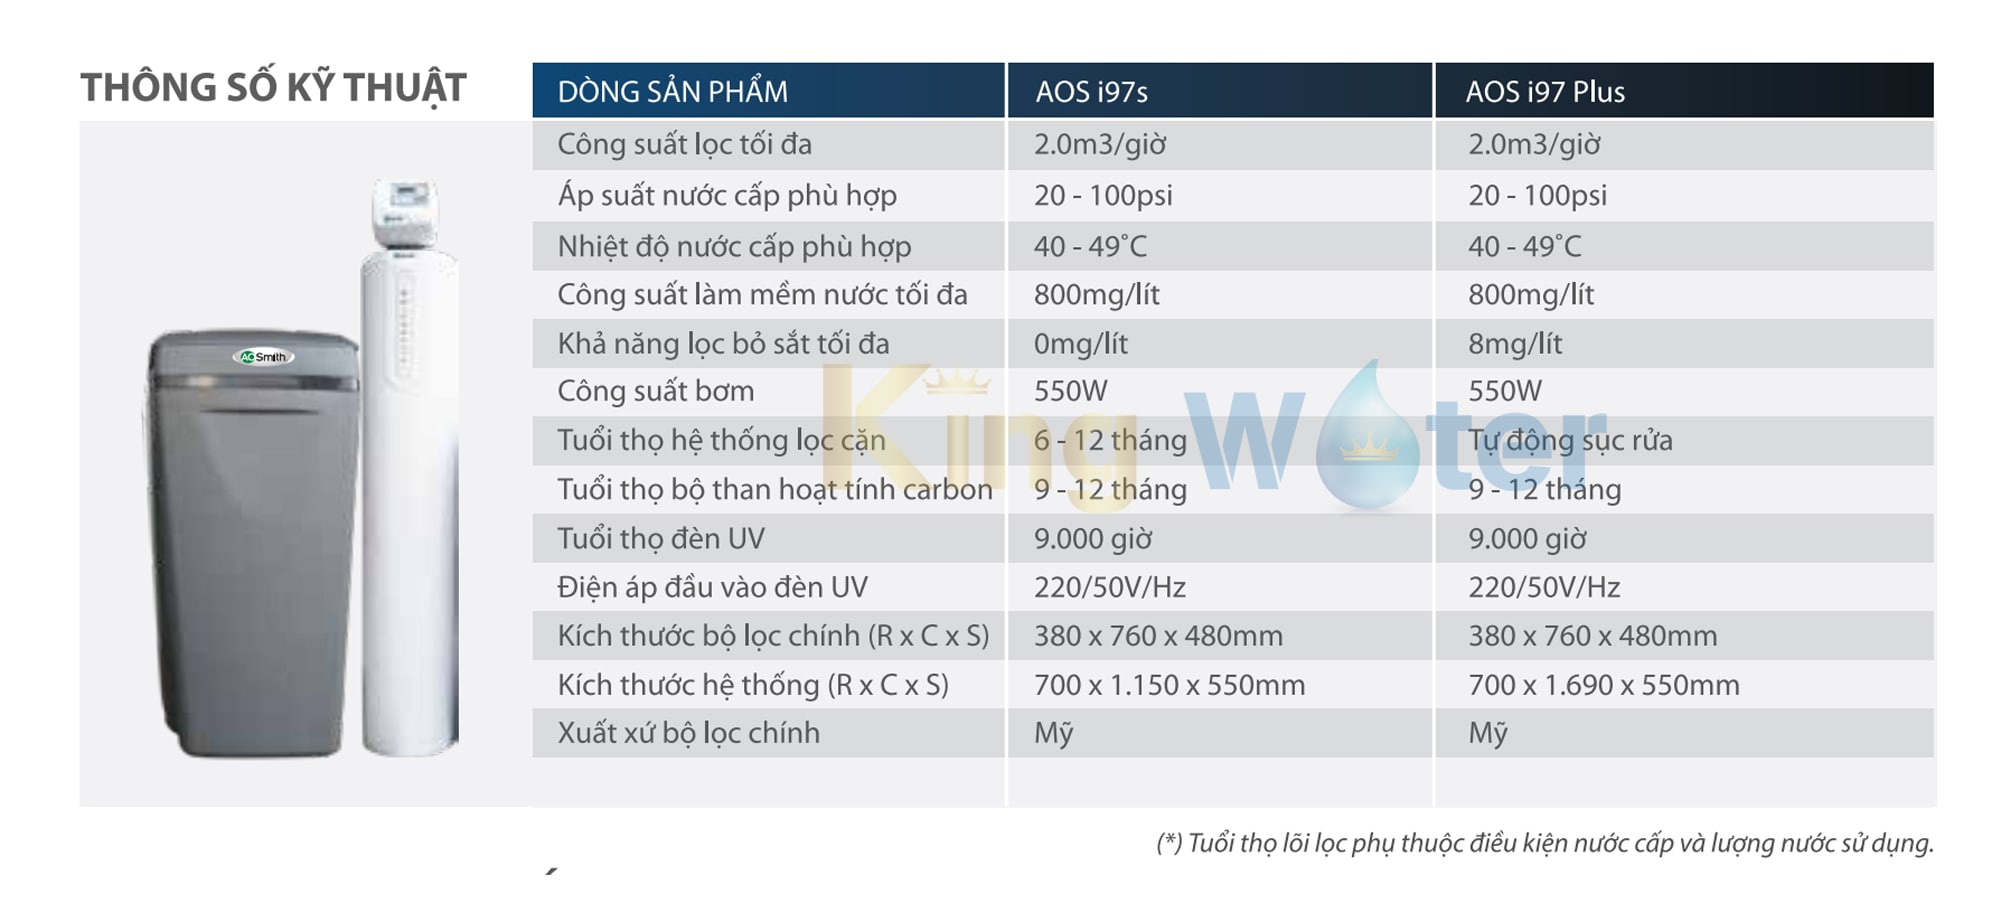 Thông số kĩ thuật máy lọc nước Ao Smith AOS i97s 